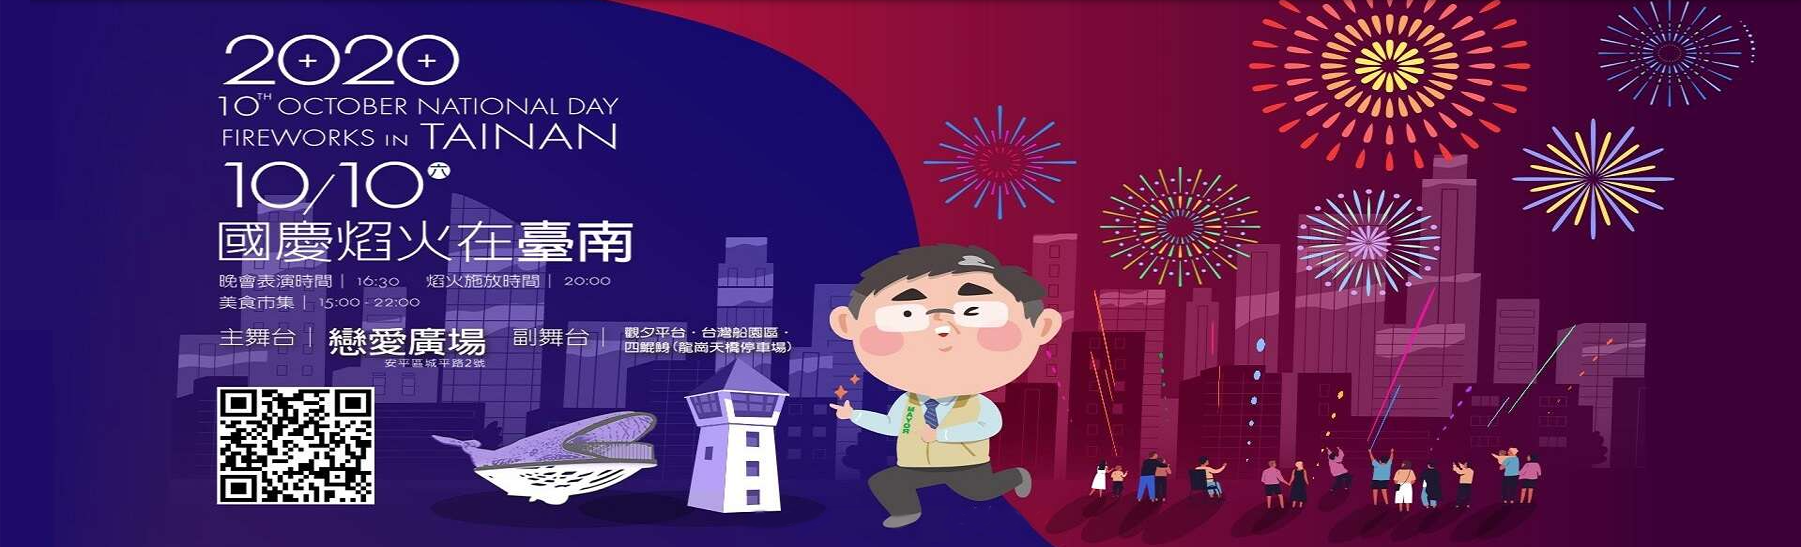 2020國慶焰火在臺南 套裝遊程及旅遊攻略看這裡！